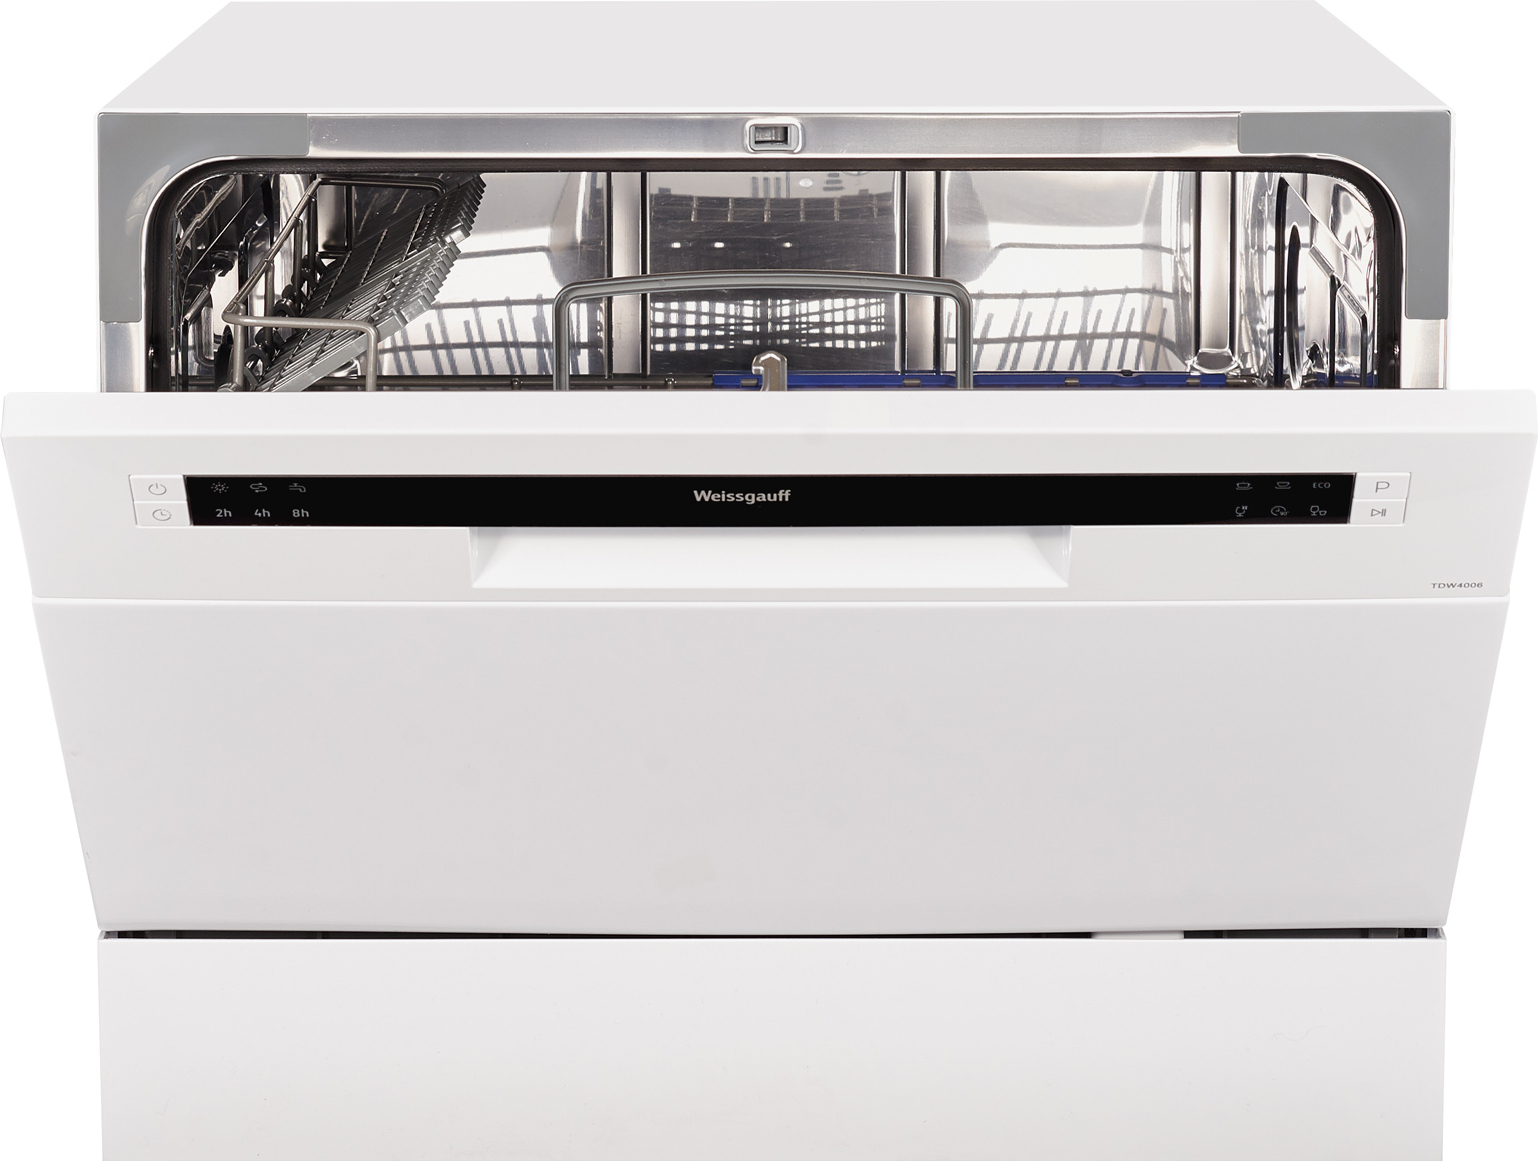 Посудомоечная машина маркет. Посудомоечная машина Weissgauff TDW 4017 D. Посудомоечная машина Weissgauff TDW 4006 V. Посудомоечная машина (компактная) Weissgauff TDW 4006. Посудомоечная машина (компактная) Weissgauff TDW 4017 D.